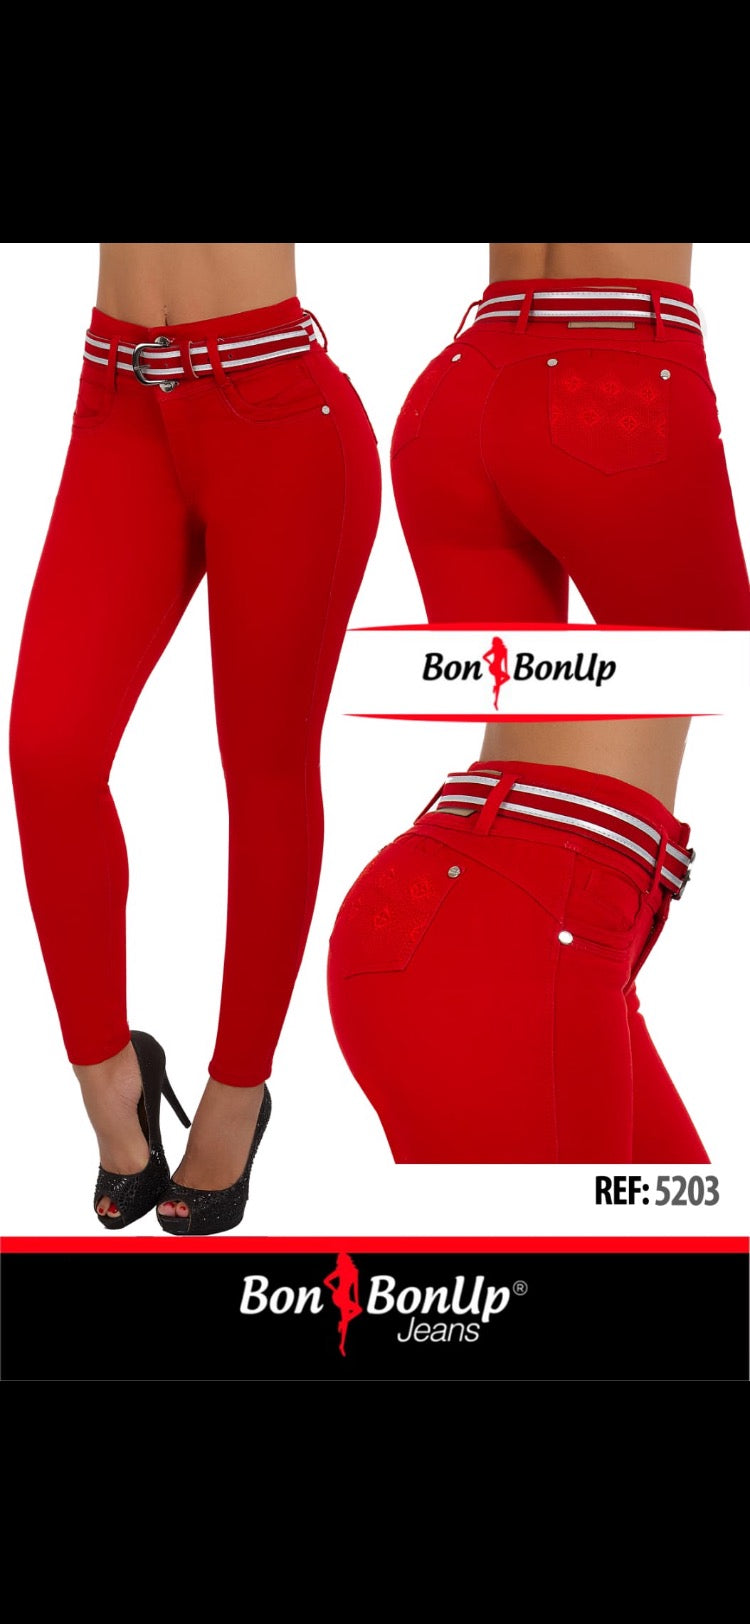 5203 BonBonUp Jeans